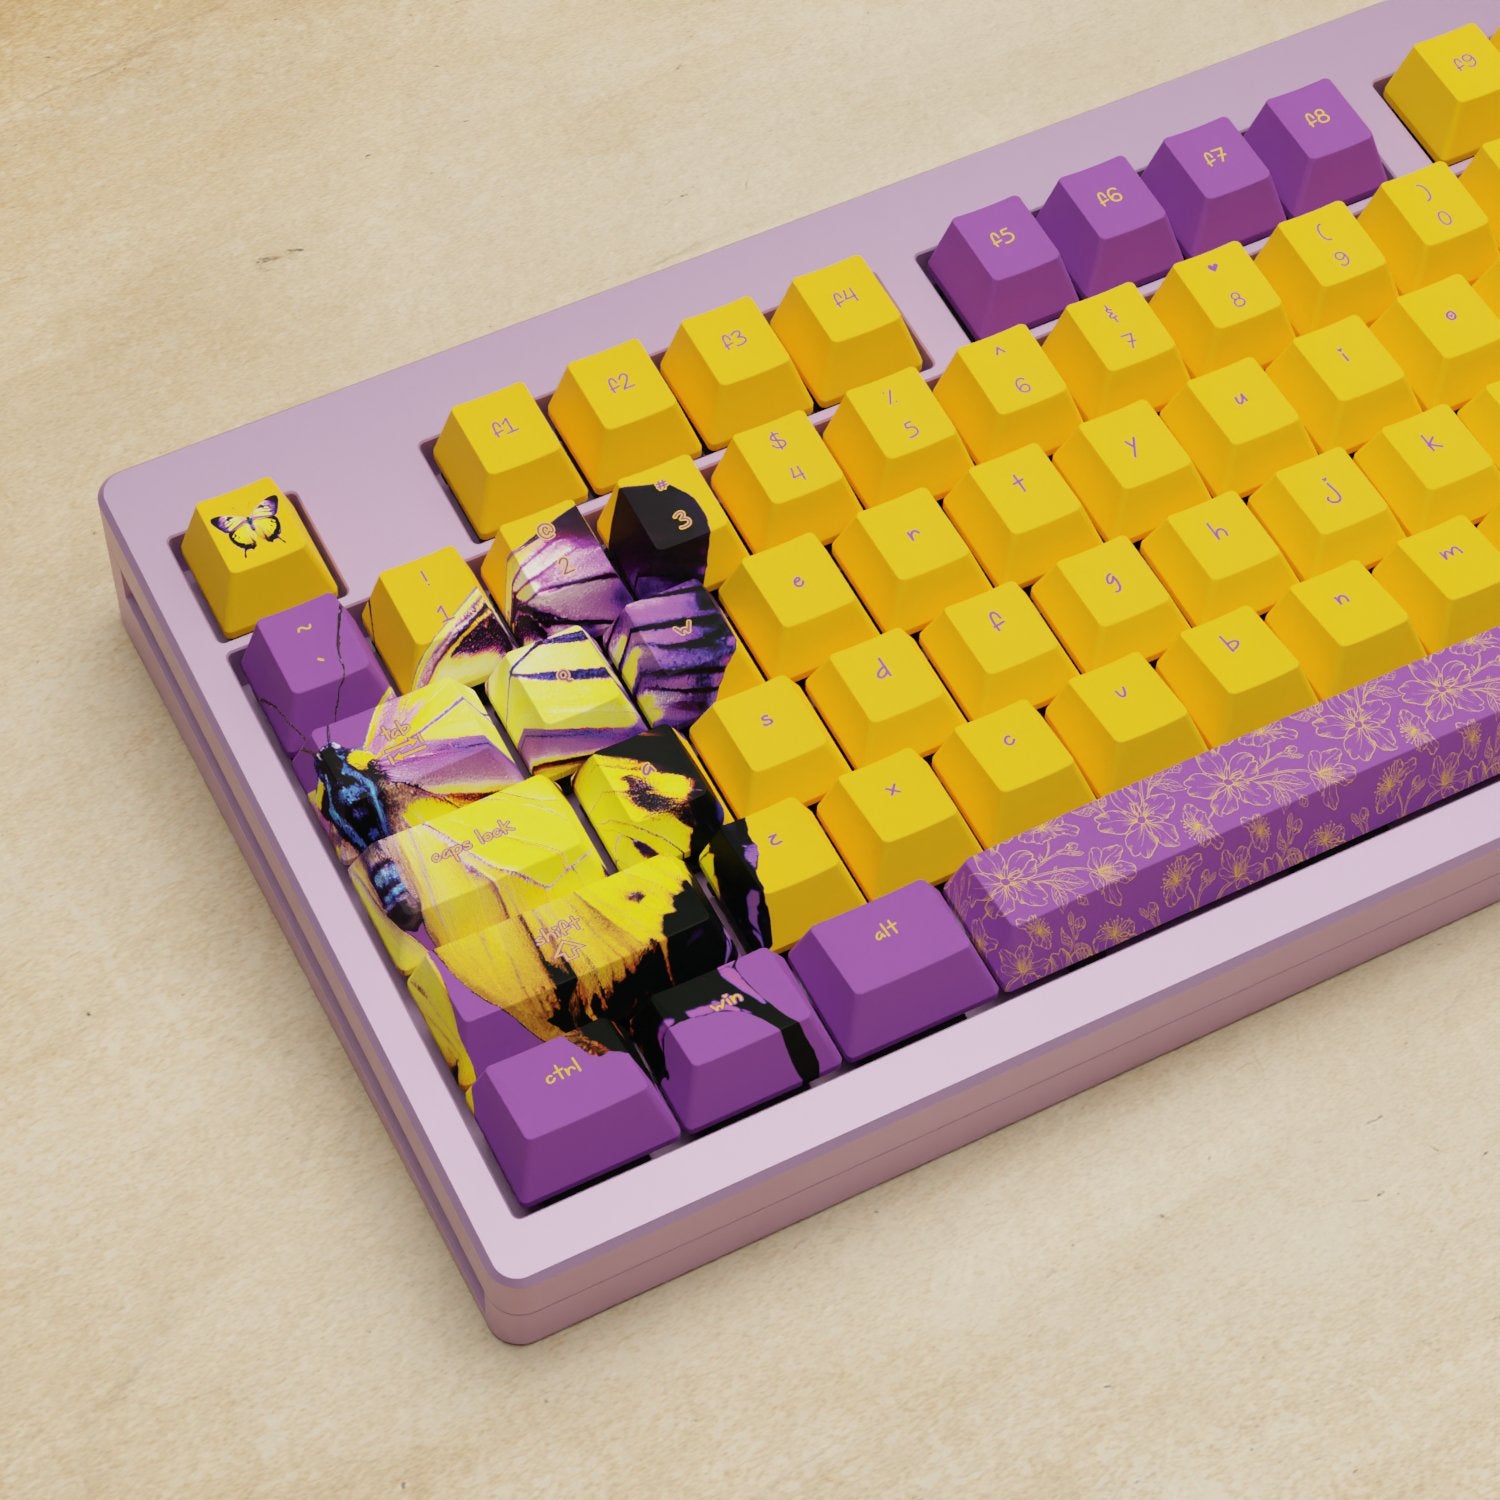 Monsgeek M5 - 100% Butterfly Mechanical Keyboard - Goblintechkeys